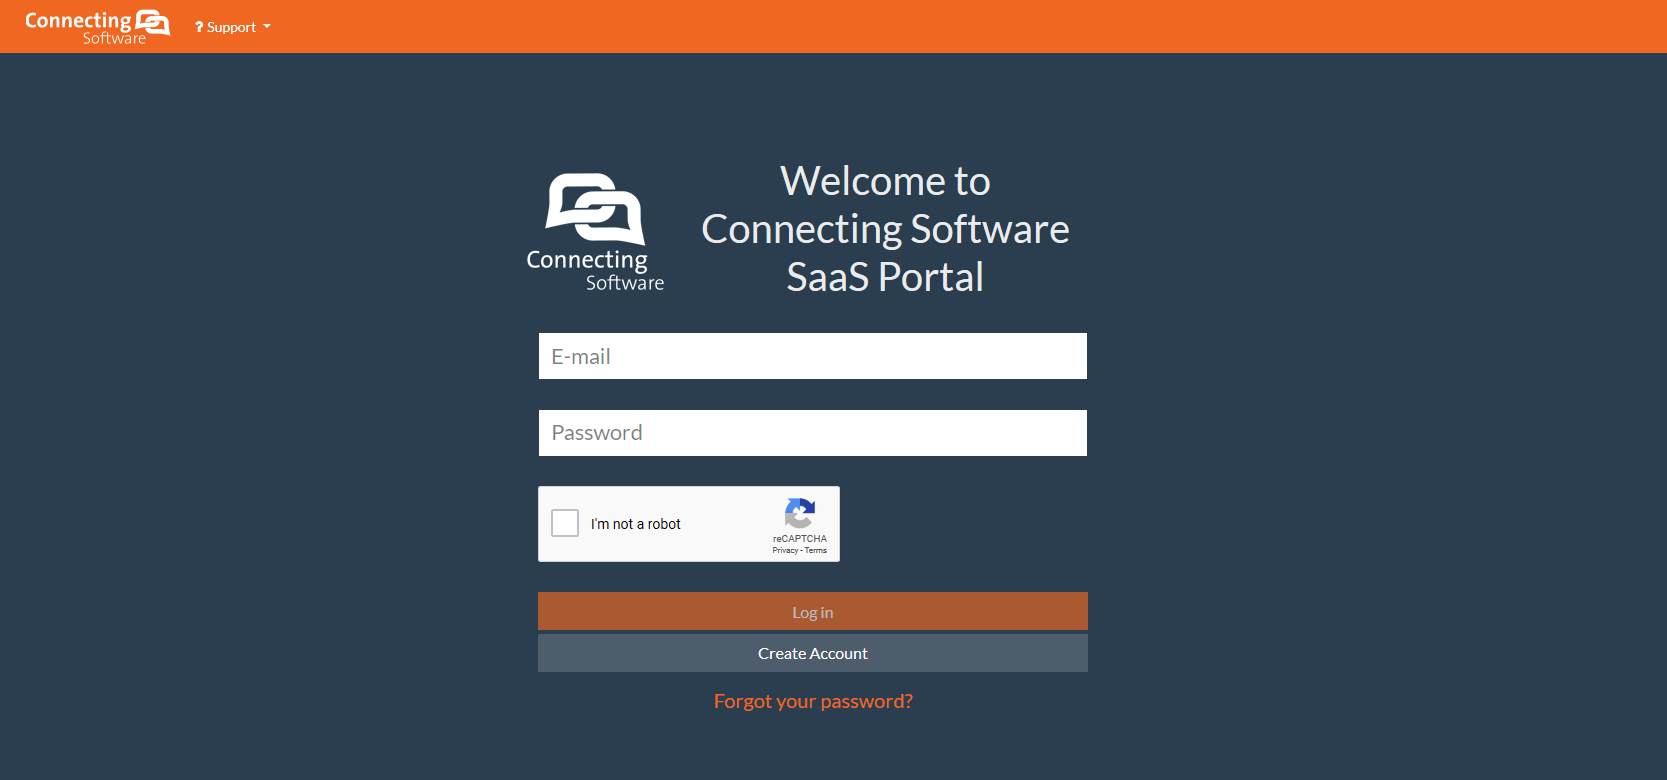 SaaS portal